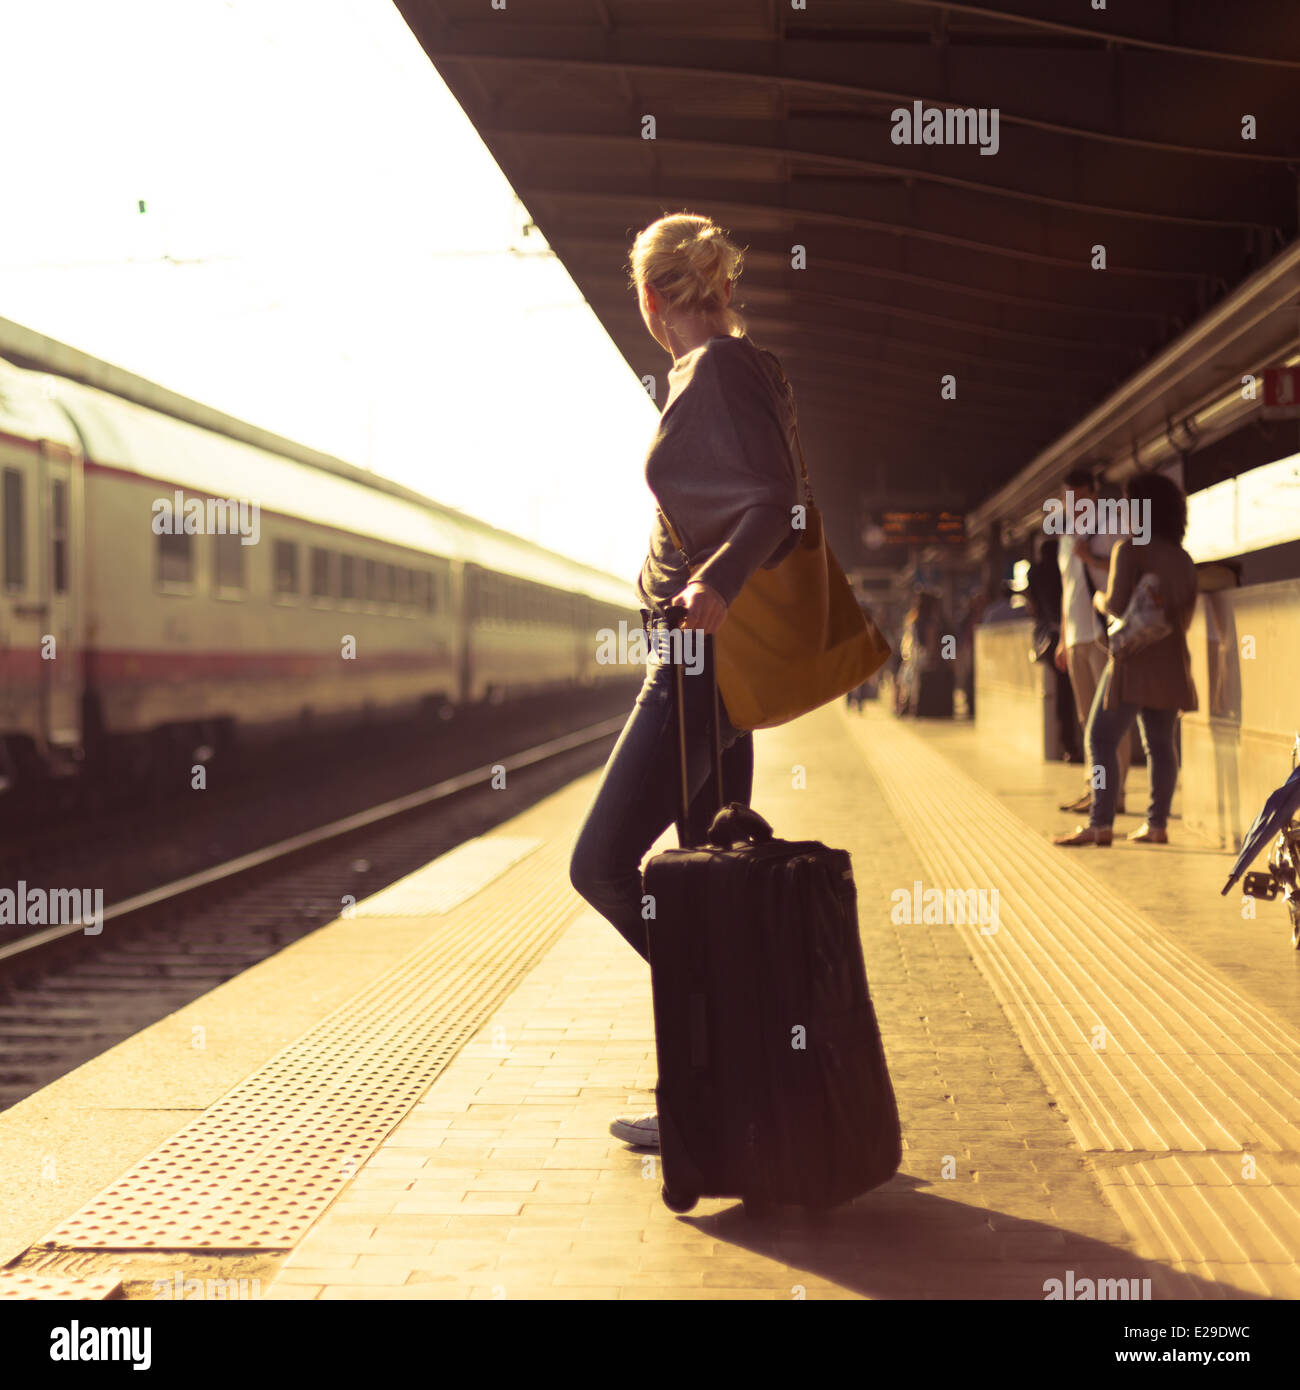 Уезжать благодаря. Девушка на вокзале с чемоданом. Девушка на перроне вокзала. Фотосессия на вокзале с чемоданом. Девушка с чемоданом уходит.